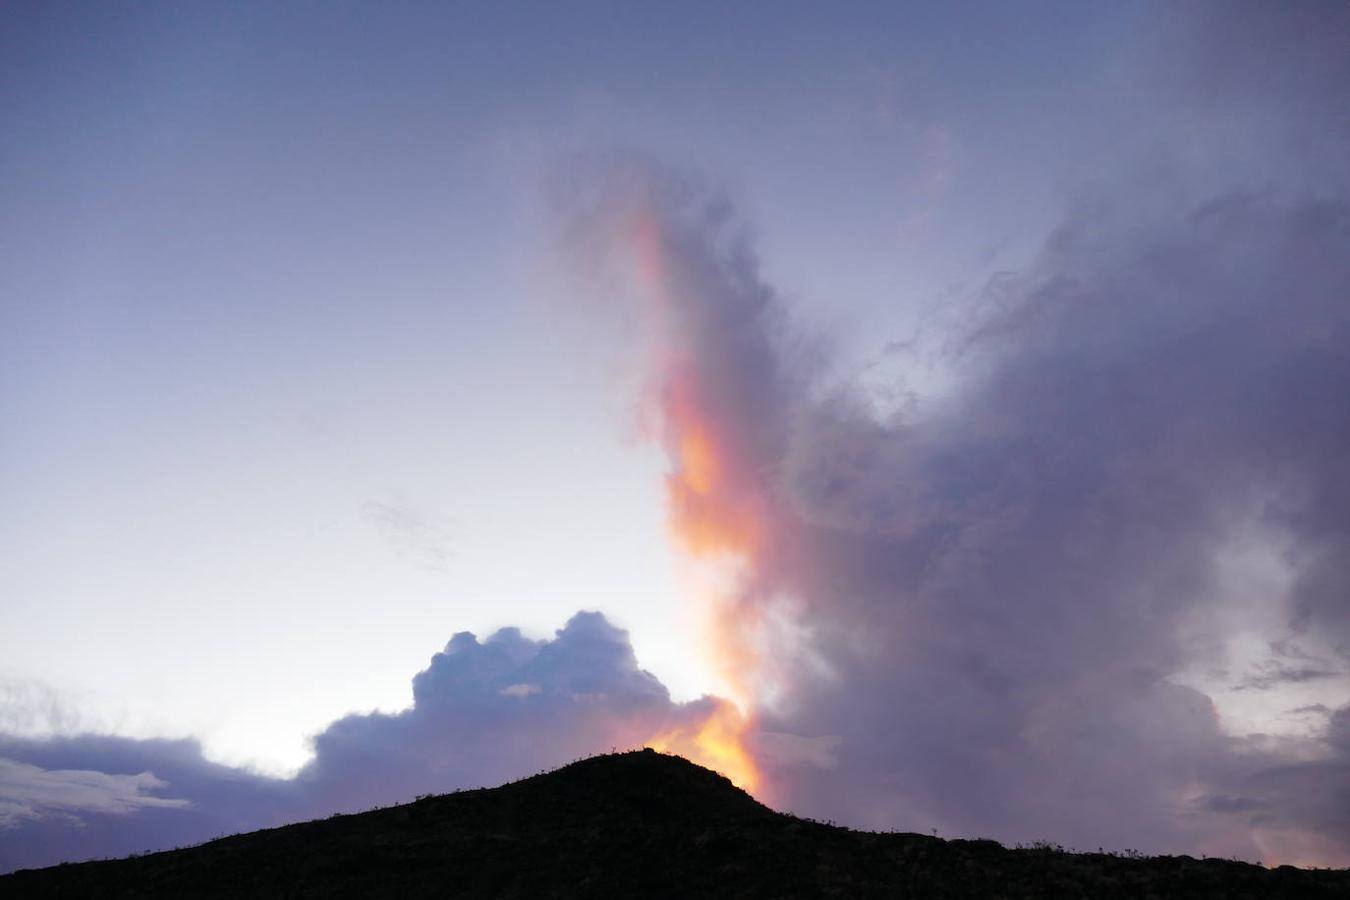 Tambora: Este volcán situado en la isla Indonesia de Sumbawa y que estalló en abril de 1815 cuando el país era una Colonia neerlandesa, está considerado como uno de los más mortíferos. Ya en aquel entonces su explosión se pudo escuchar a 2.600 km de distancia. La columna eruptiva alcanzó la estratosfera con 43.000 metros y la ceniza llegó a alcanzar los 1.300 km, llegando a arrasar todo a su paso y provocando la muerte de cerca de 12.000 personas. La última erupción tuvo lugar en 1967, aunque no fue explosiva, el volcán sigue estando en activo, con una Caldera de 6 km de diámetro y 1100 m de profundidad. 